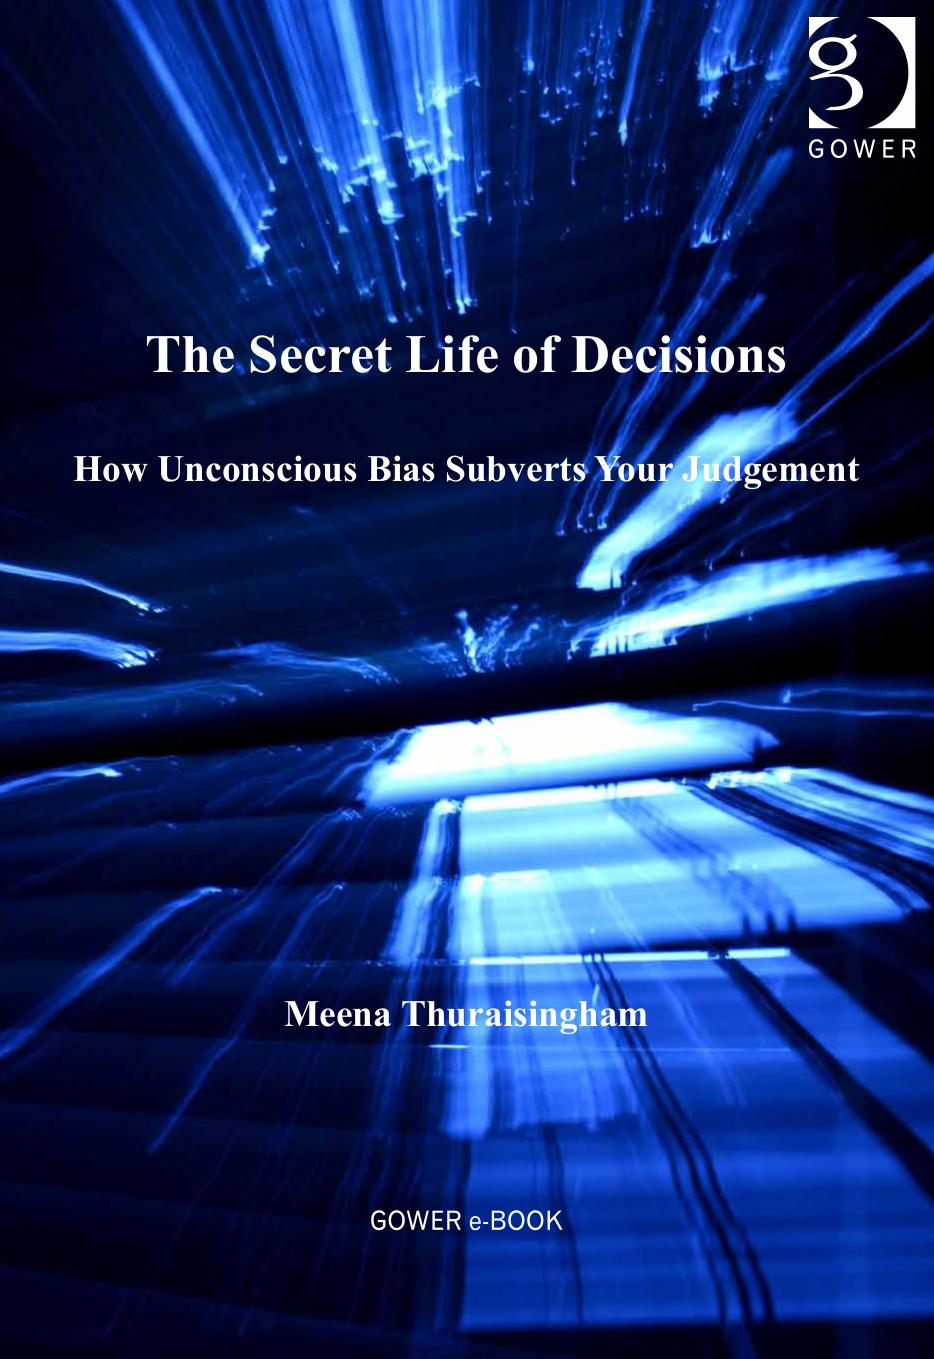 The Secret Life of Decisions: How Unconscious Bias Subverts Your Judgement